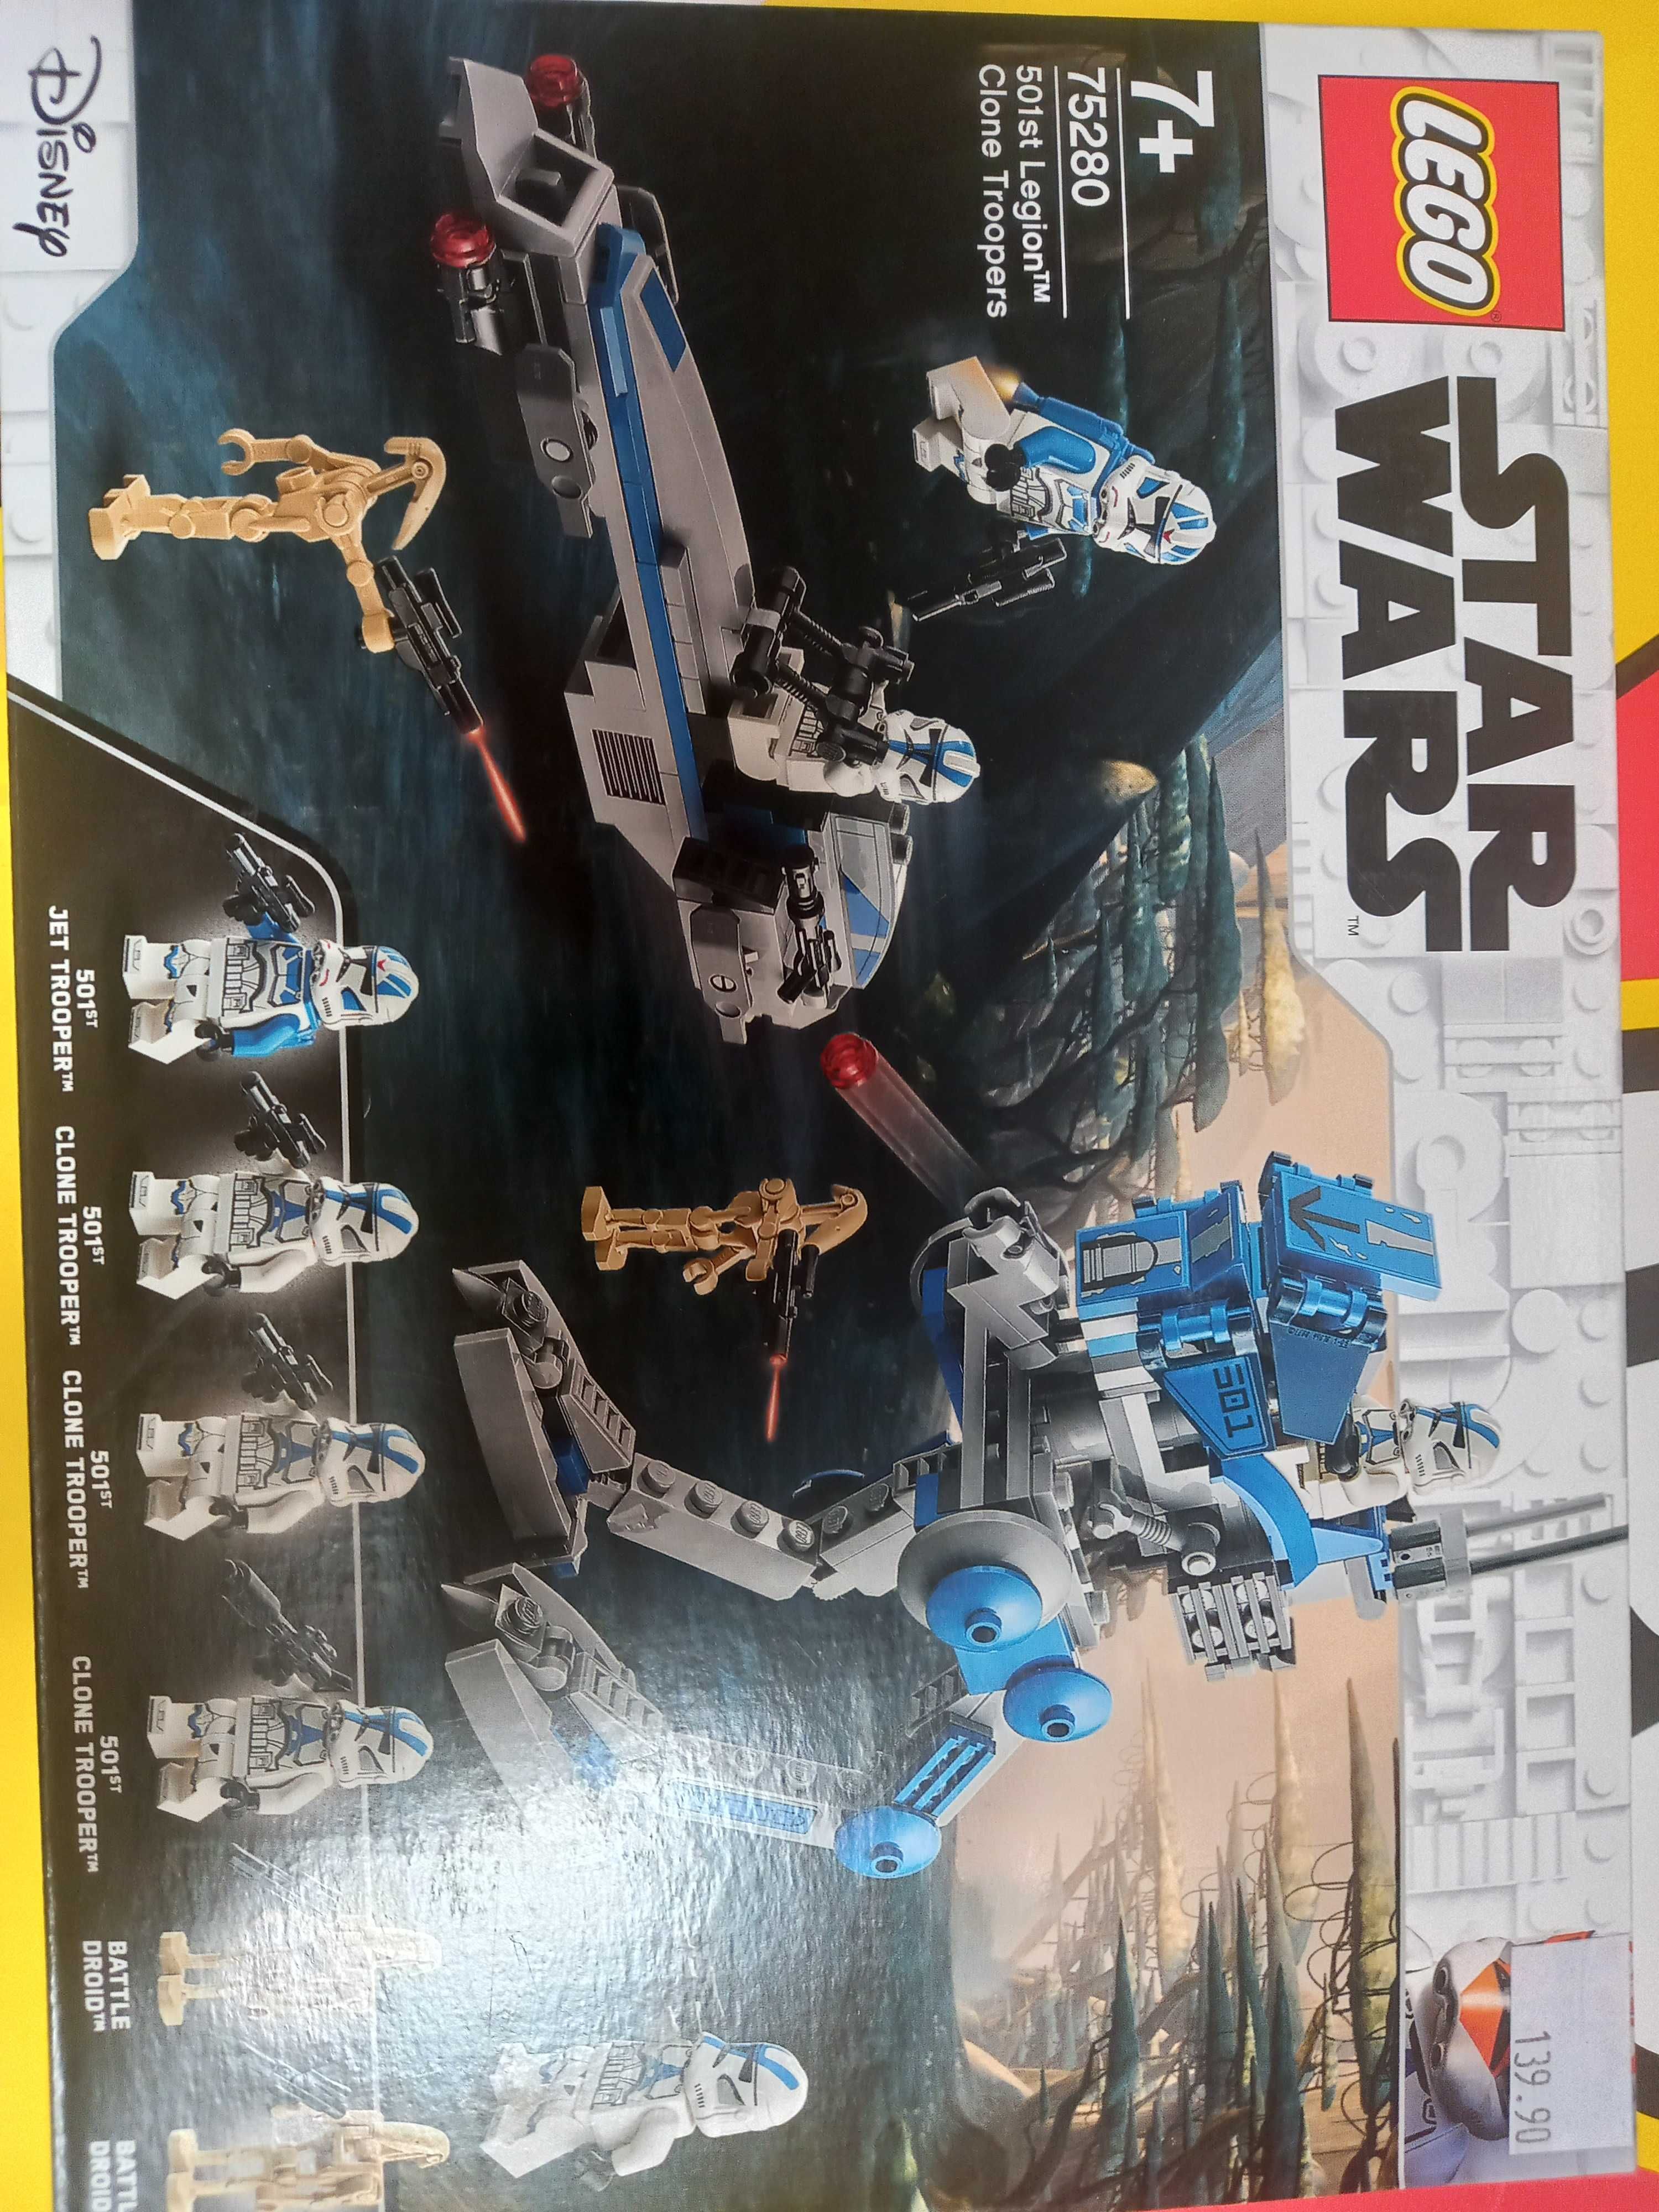 Lego 75280 star wars